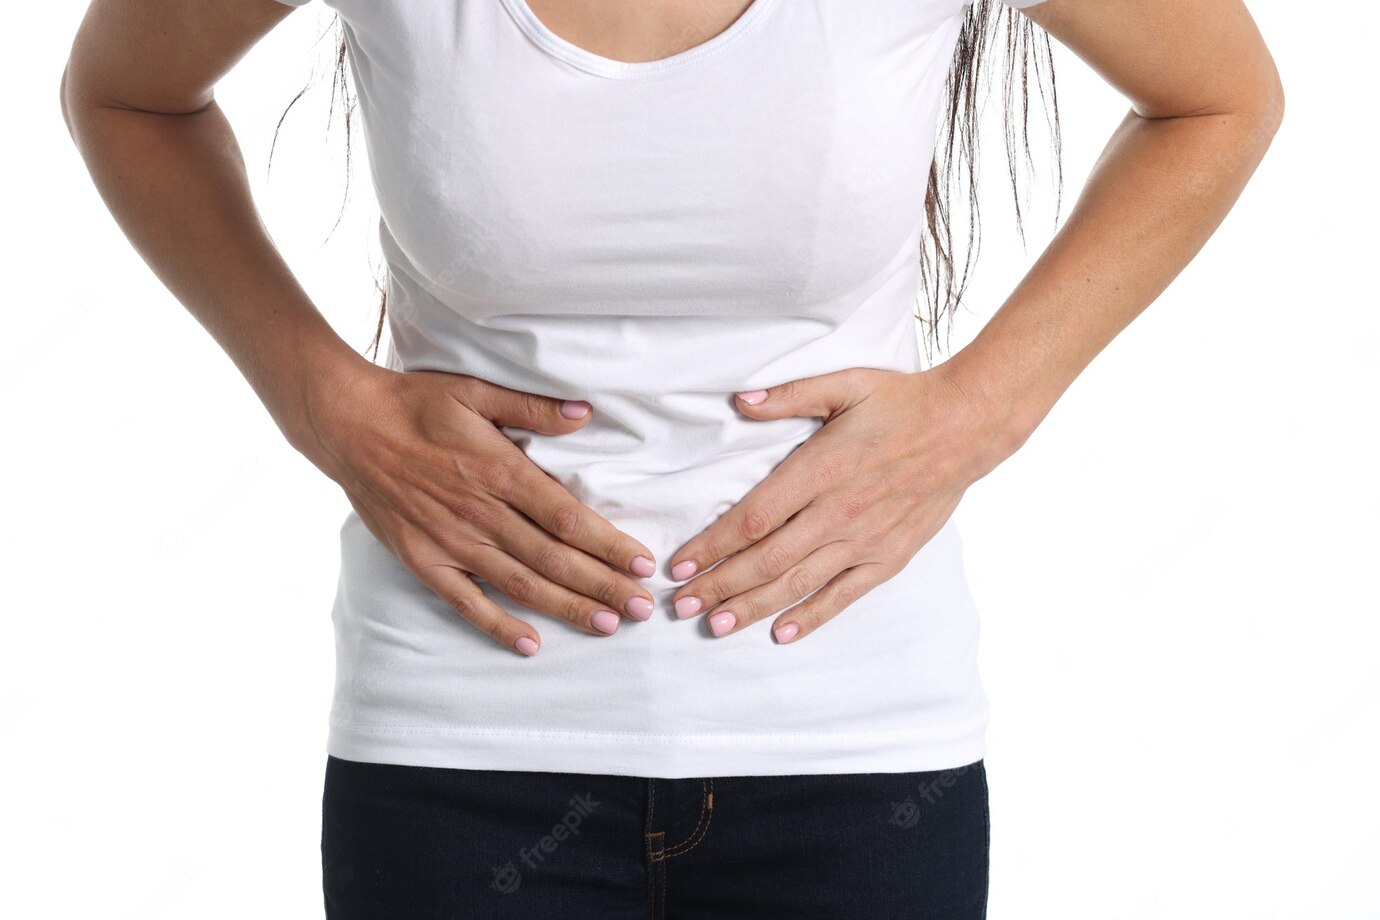 Dolor menstrual puede generar incapacidad según proyecto de ley en España